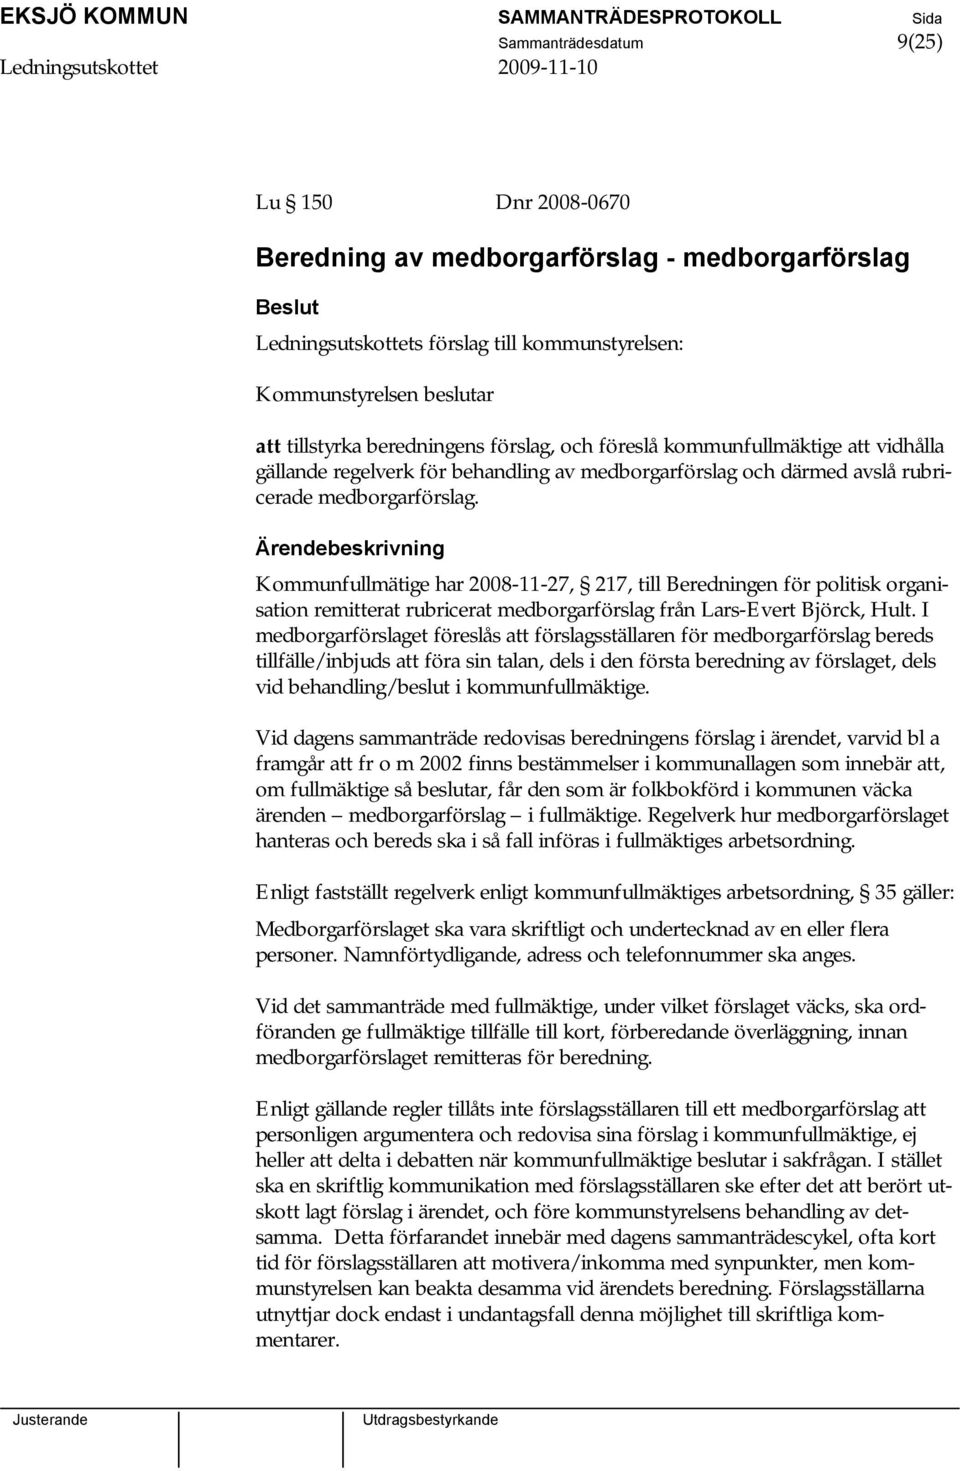 Kommunfullmätige har 2008-11-27, 217, till Beredningen för politisk organisation remitterat rubricerat medborgarförslag från Lars-Evert Björck, Hult.